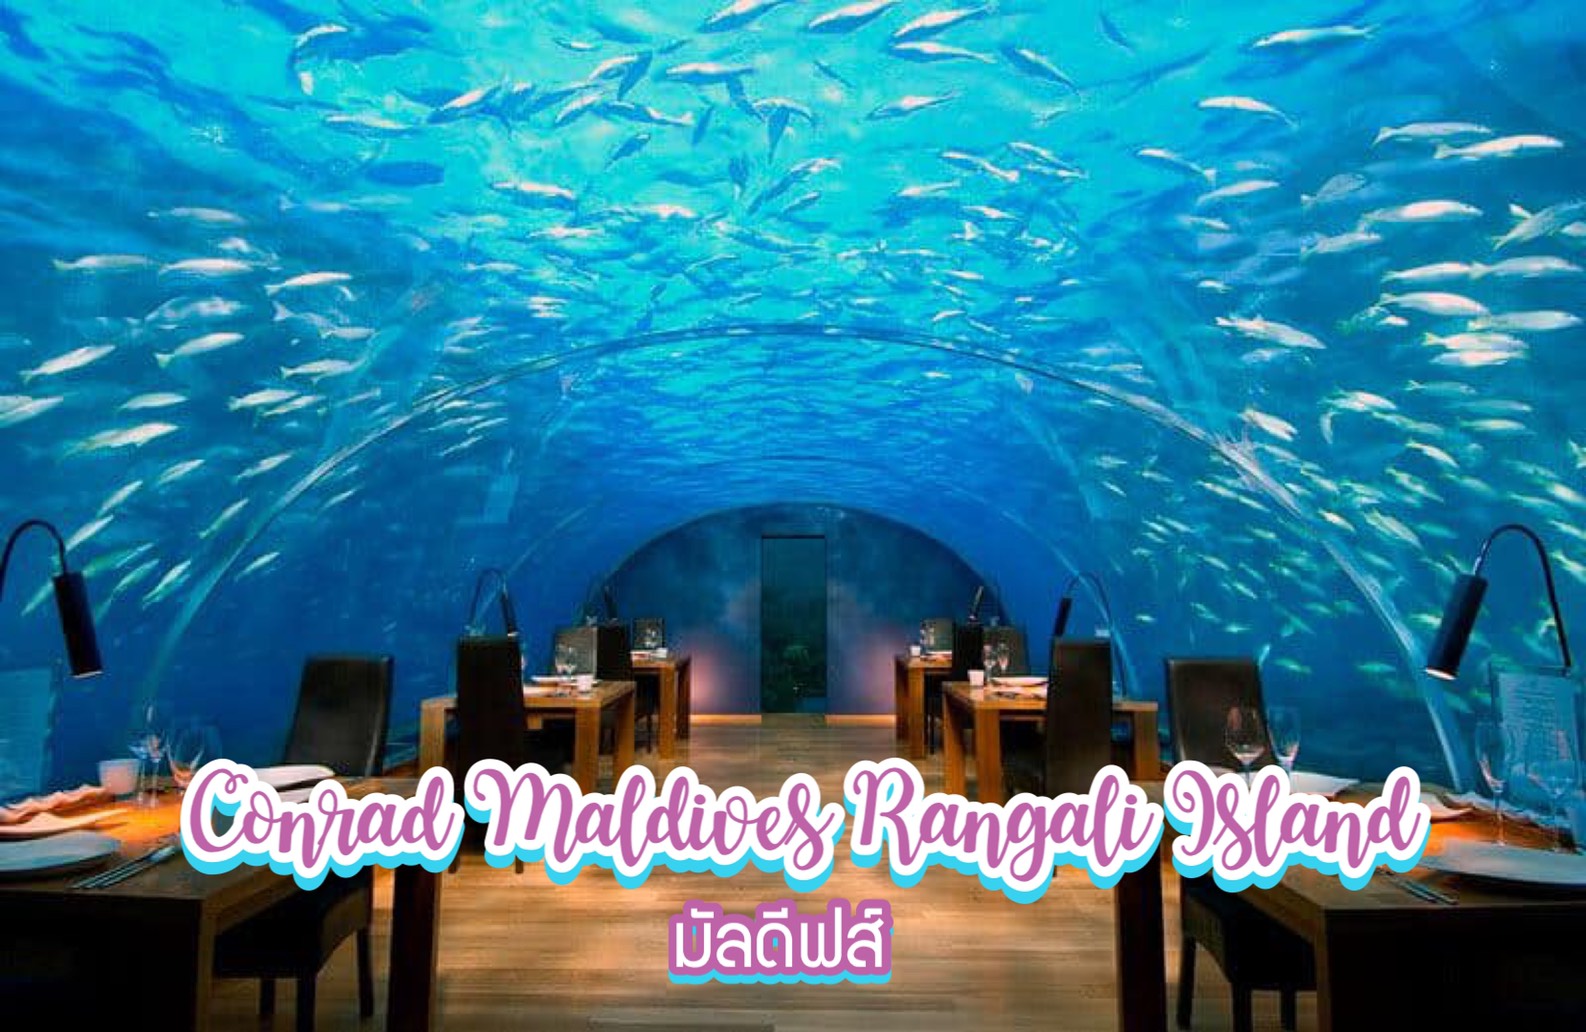 โรงแรม Conrad Maldives Rangali Island มัลดีฟส์